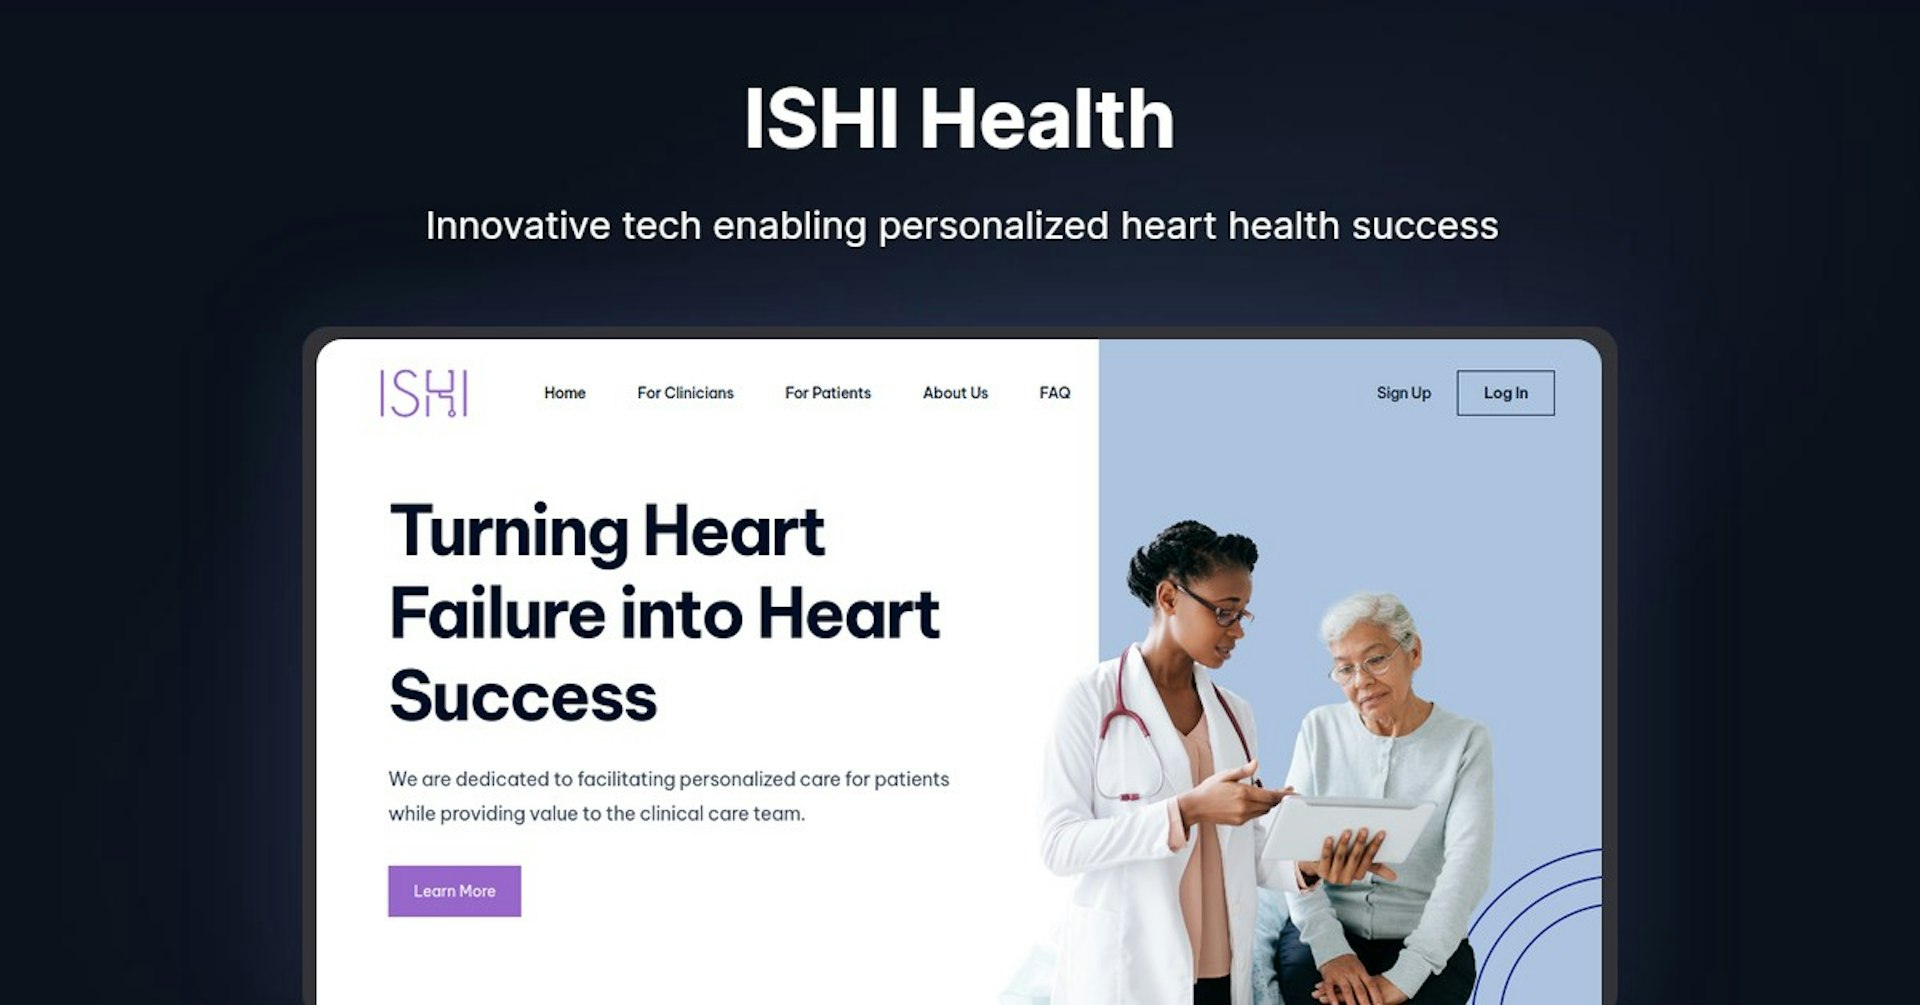 ISHI Health